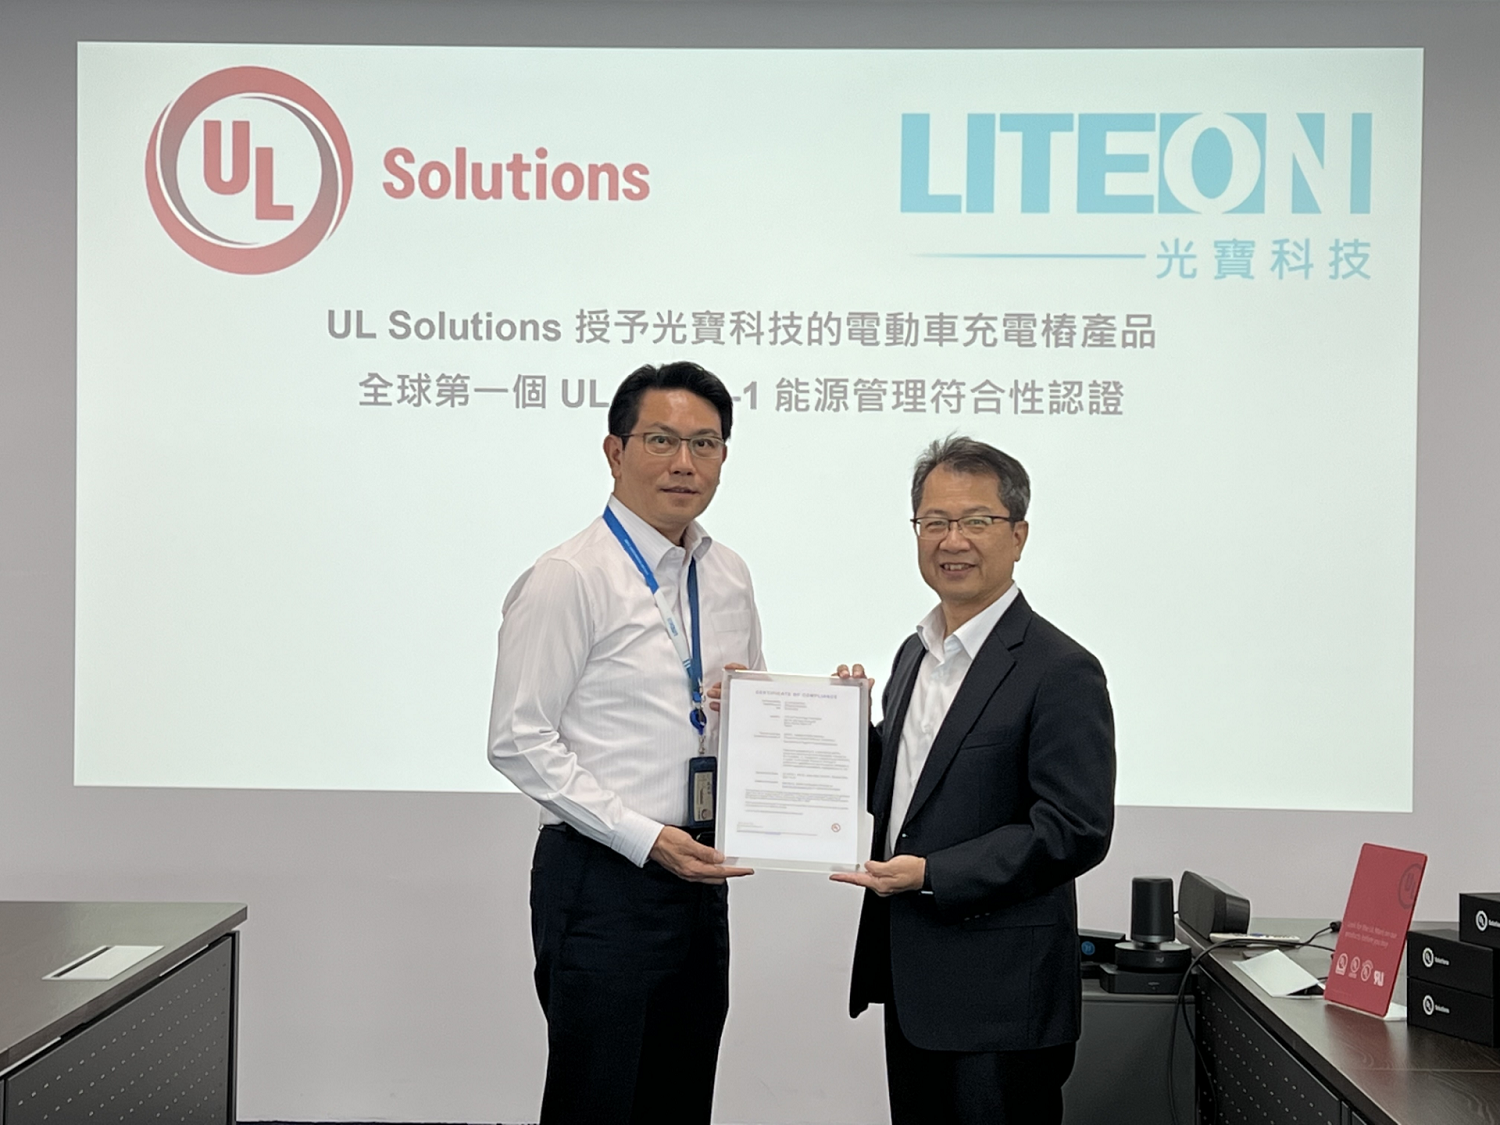 全球第一张电动车充电桩产品的 UL 60730-1 能源管理符合性证书的颁授仪式由 UL Solutions 副总裁兼台湾总经理陈宗弘与光宝科技处长李明修代表两方出席主持